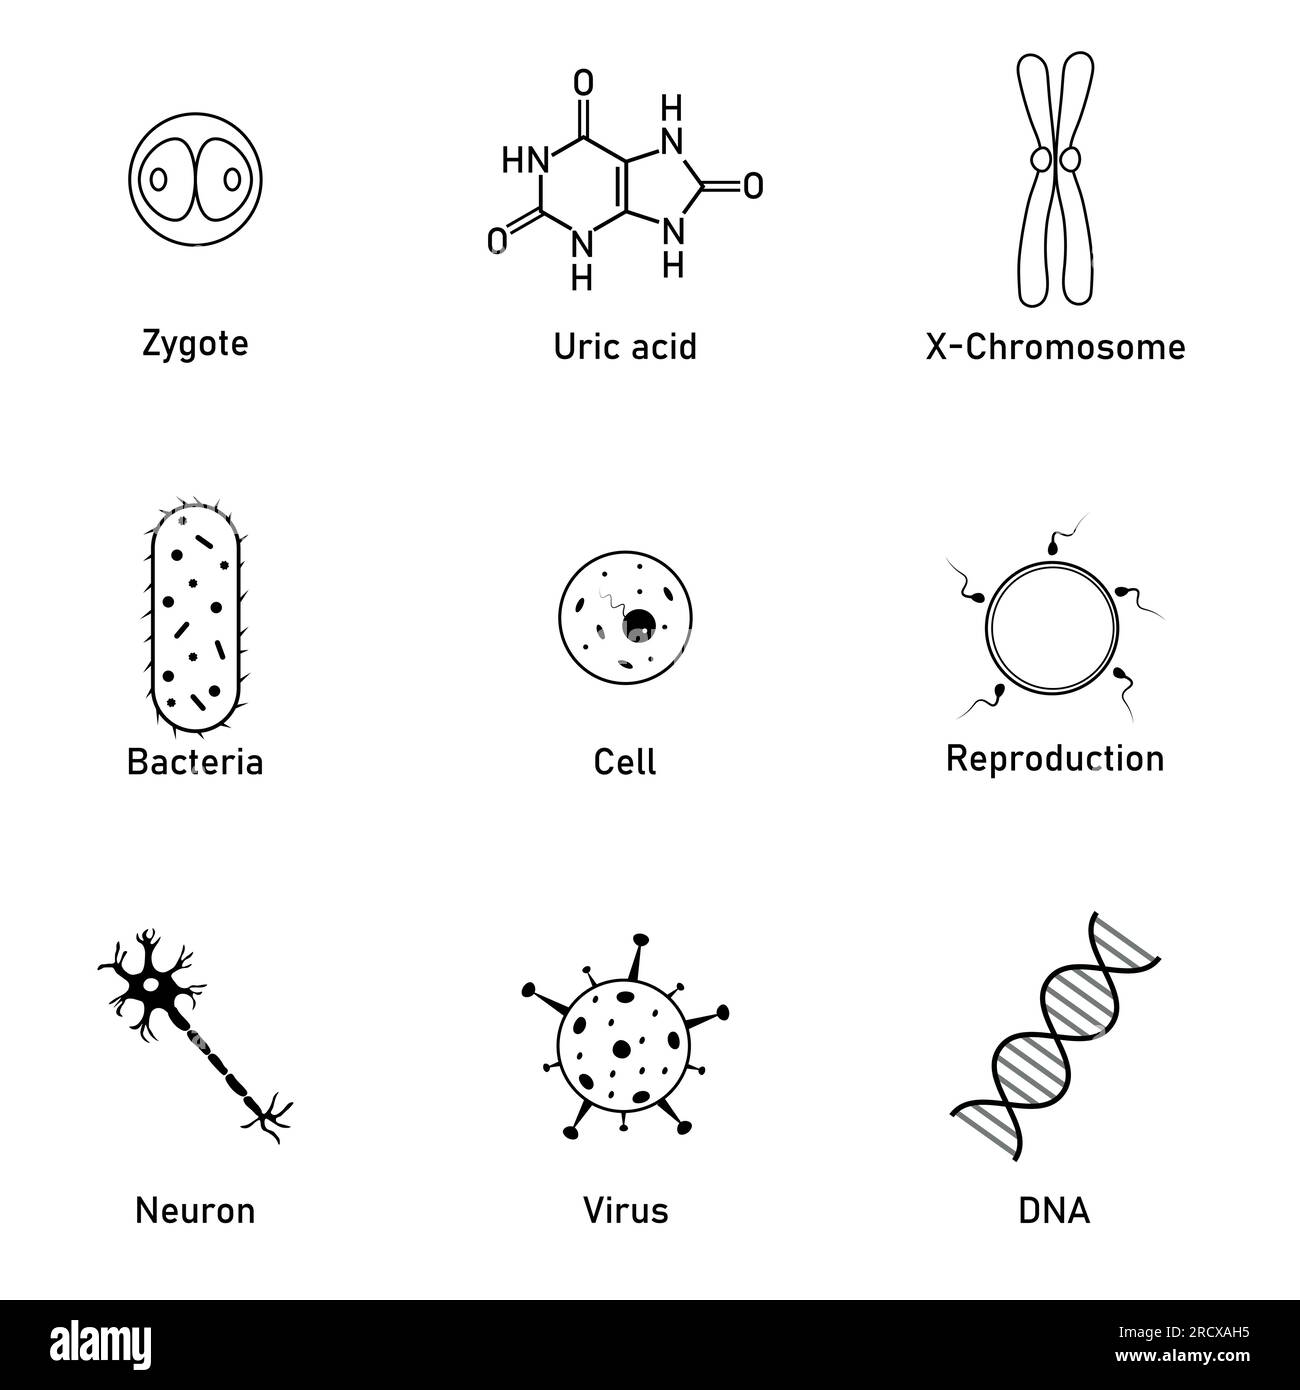 Icône des sciences biologiques. Acide urique, bactéries, cellule, neurone, virus, ADN, reproduction et symbole zygote. Ressources en biologie pour les enseignants et les étudiants. Illustration de Vecteur